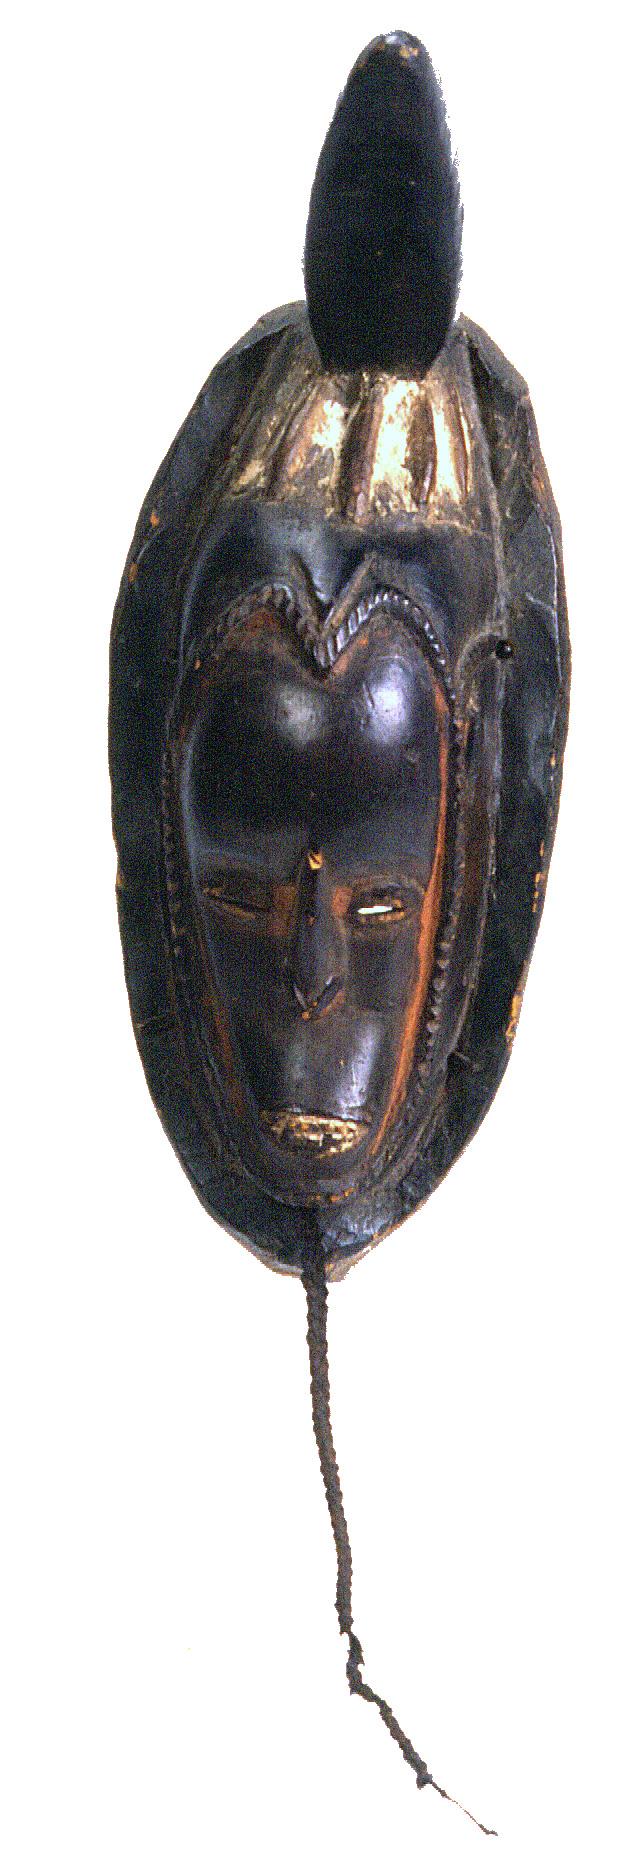 Face Mask, Guro Peoples, Ivory Coast.